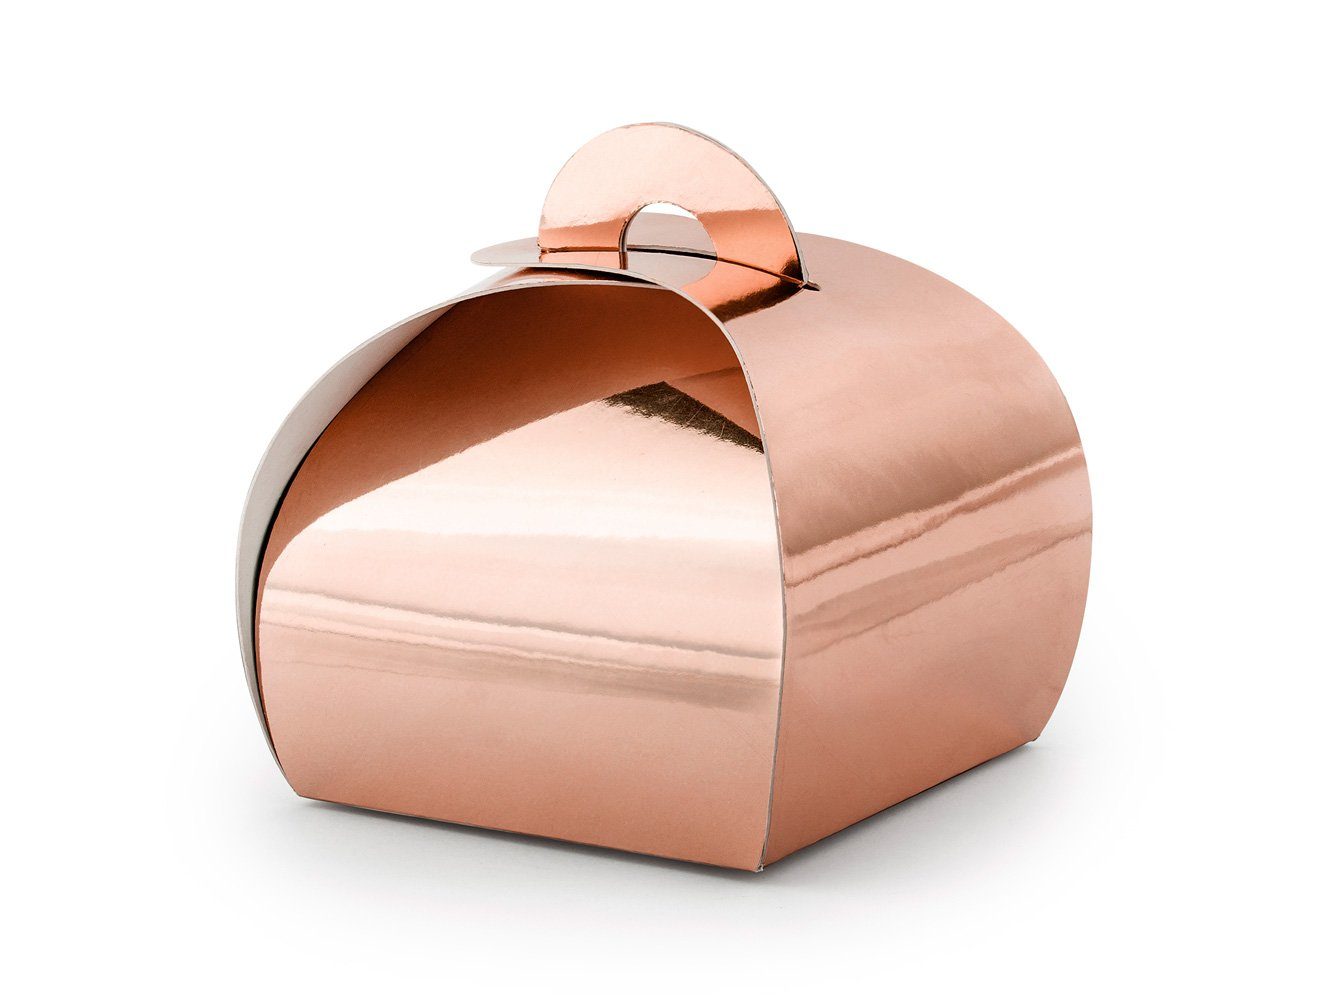 partydeco Geschenkbox, Geschenkbox für Gastgeschenke 6x5.5cm abgerundet 10er Set rosegold